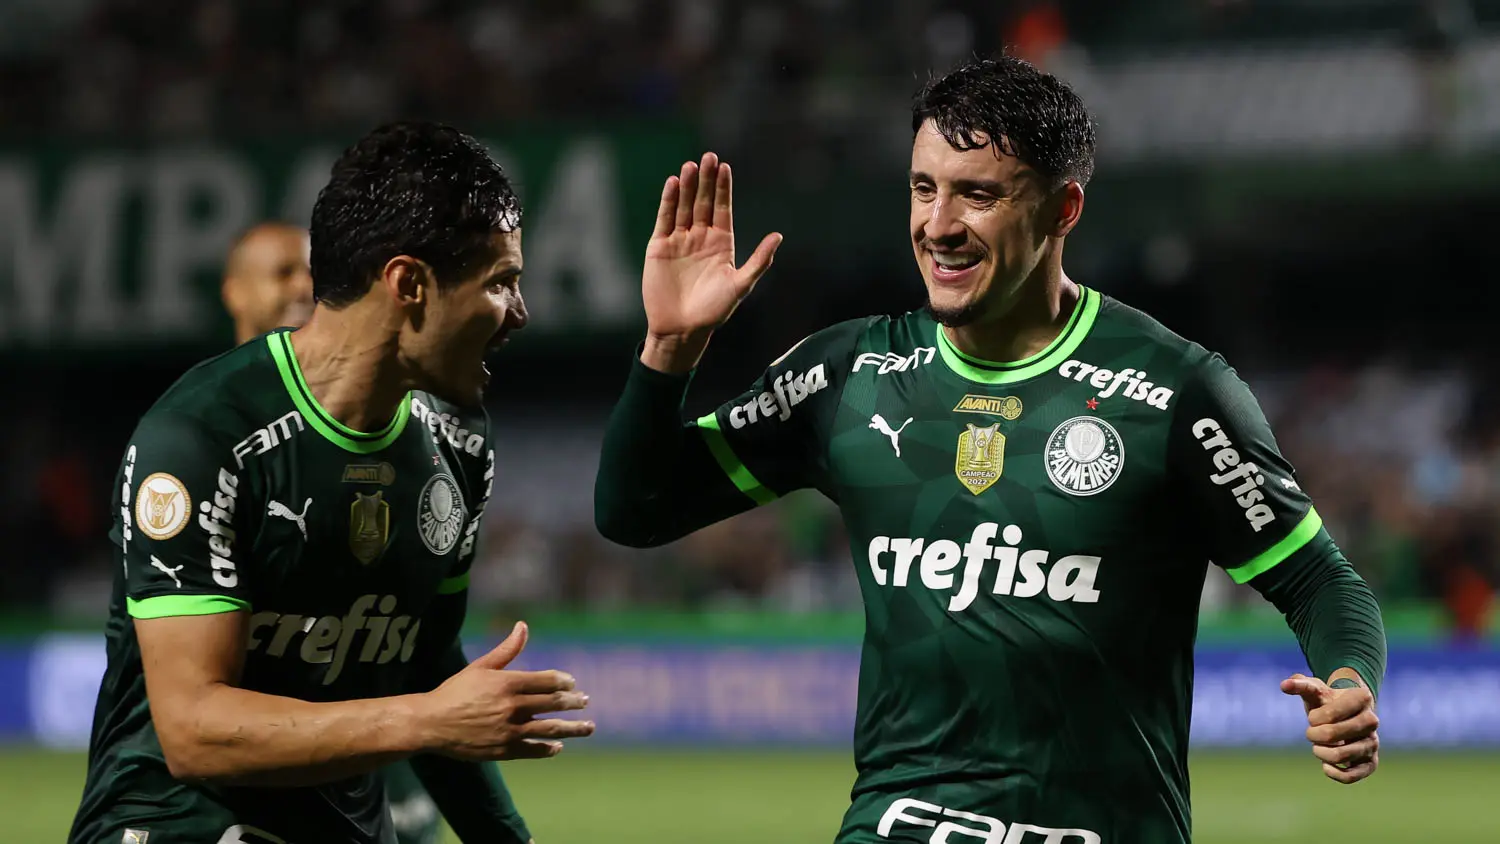 Confira a sequência de jogos do Palmeiras no Brasileirão 2023